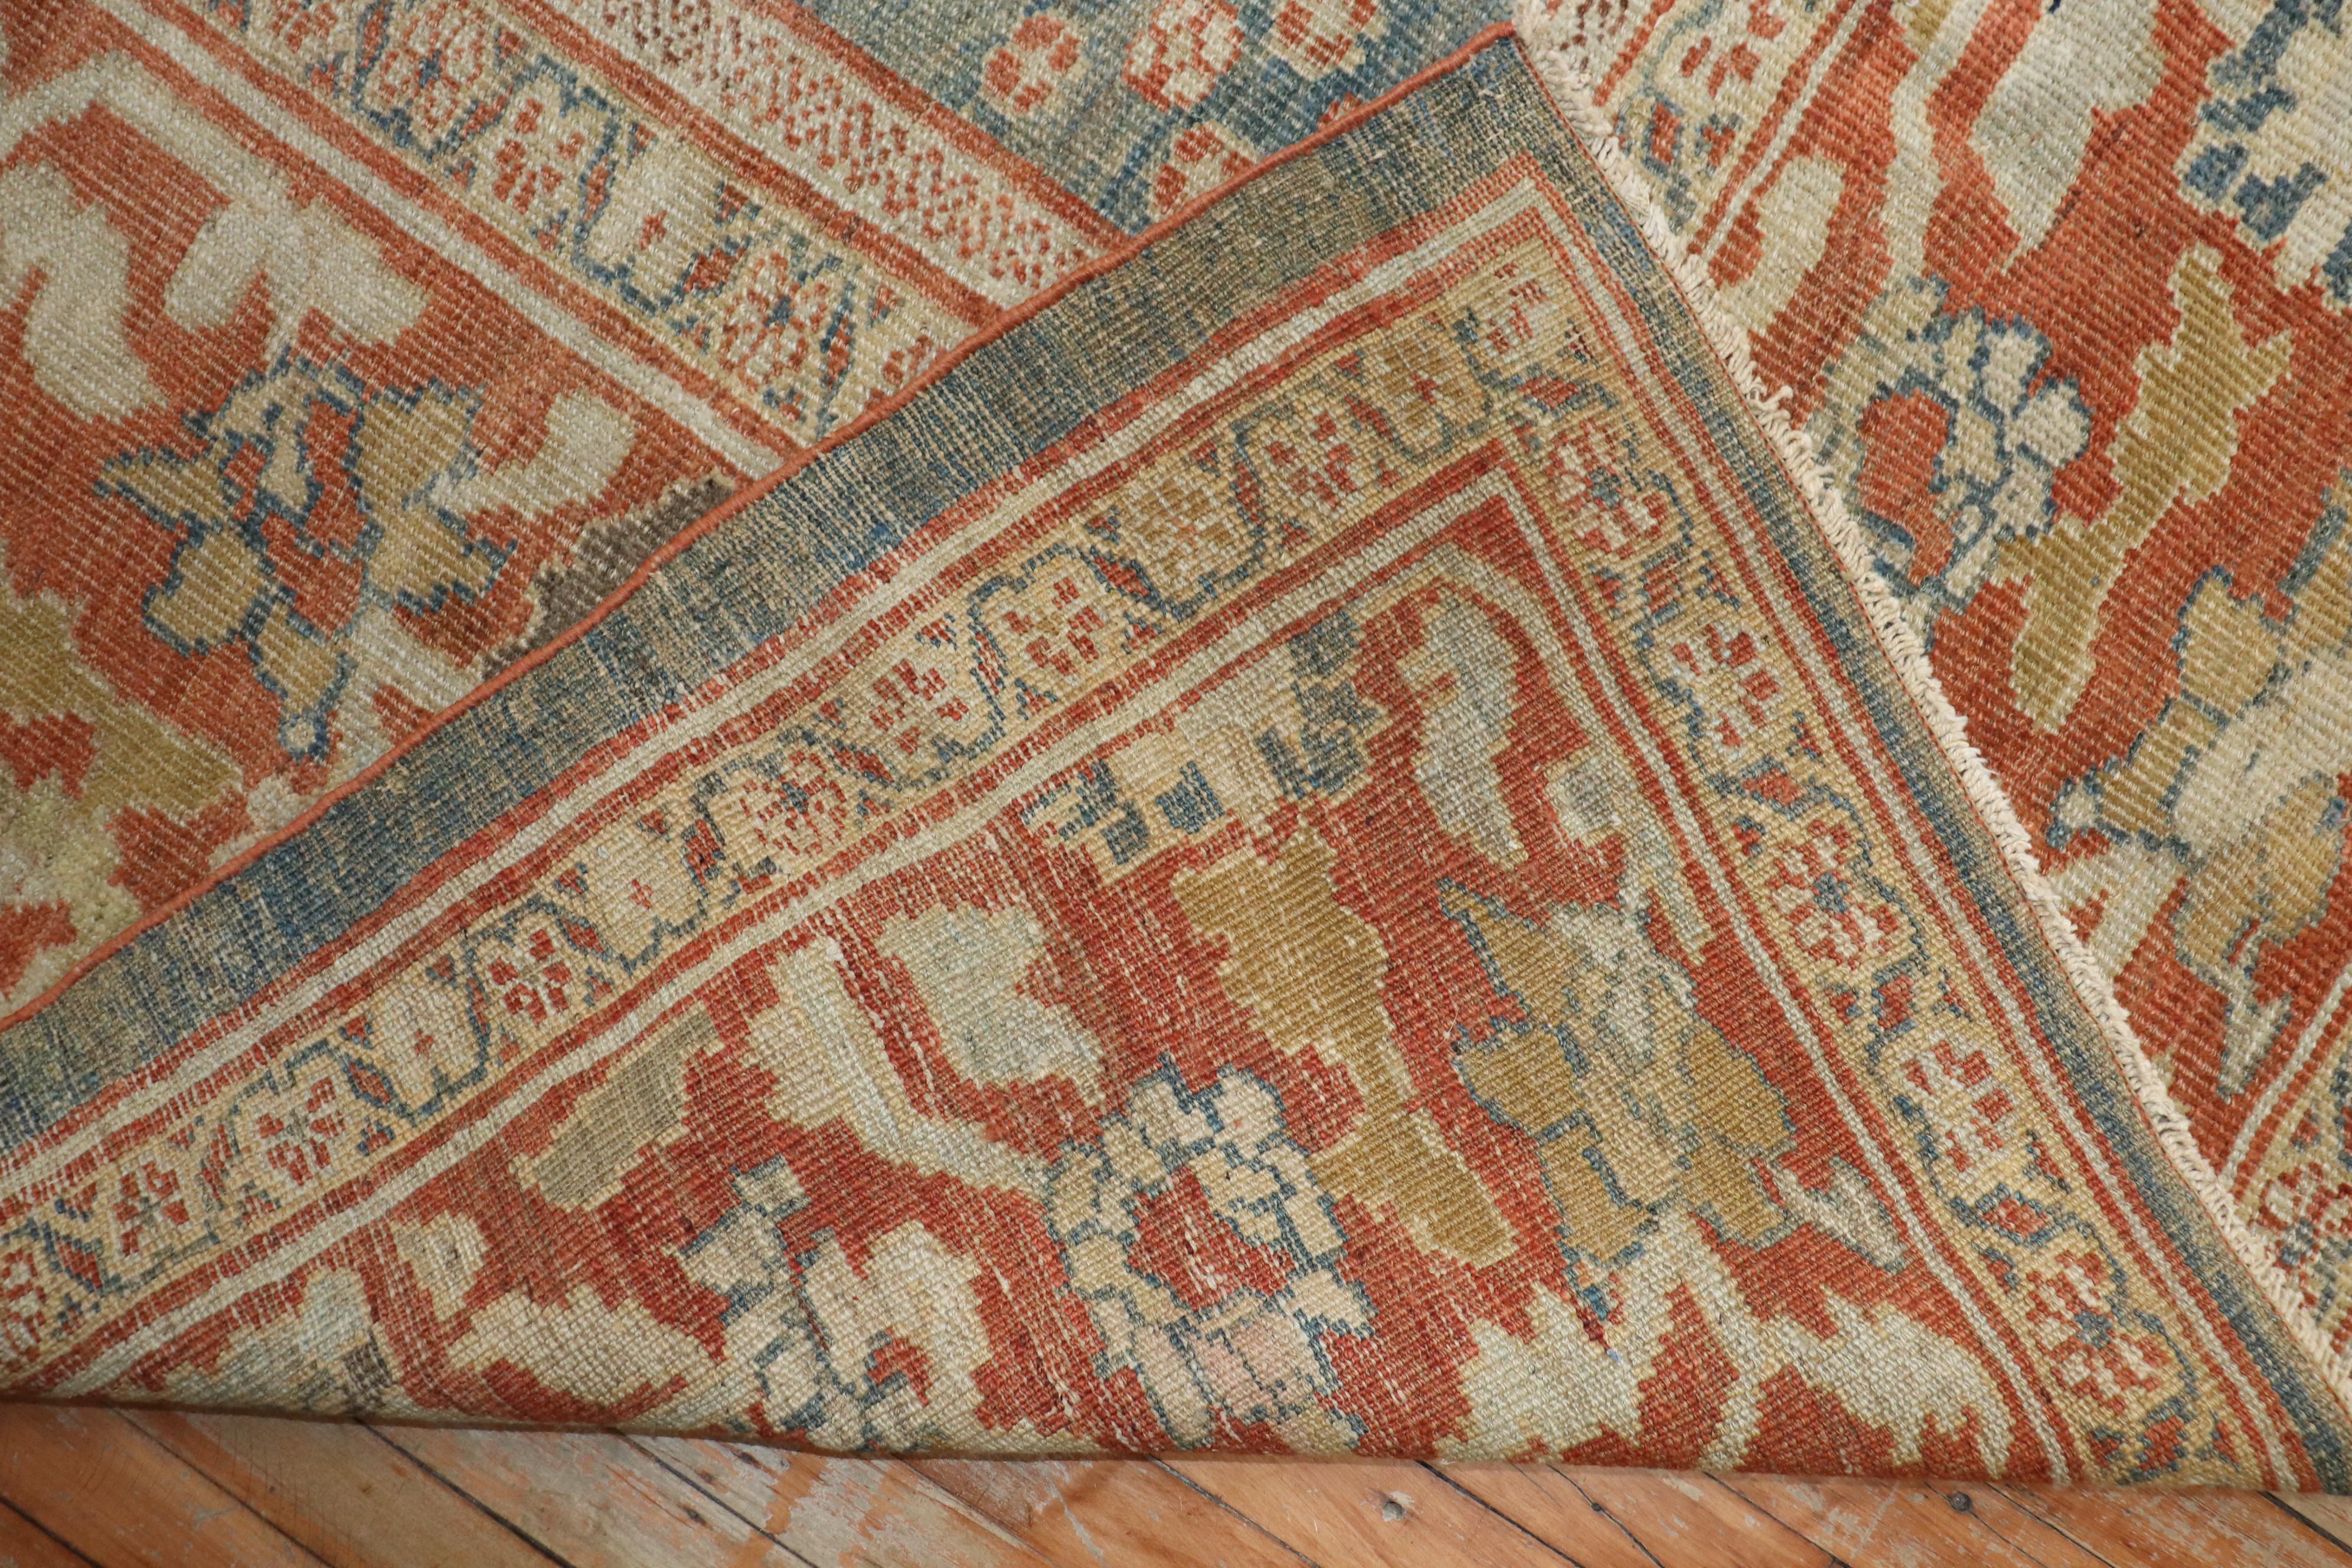 Persischer Sultanabad-Teppich aus dem späten 19. Jahrhundert für Kenner.

Maße: 10'5'' x 13'10''

Die Sultanabad-Teppiche werden in einer Reihe von Dörfern im westlichen Zentraliran geknüpft und zeichnen sich durch großflächige All-Over-Muster